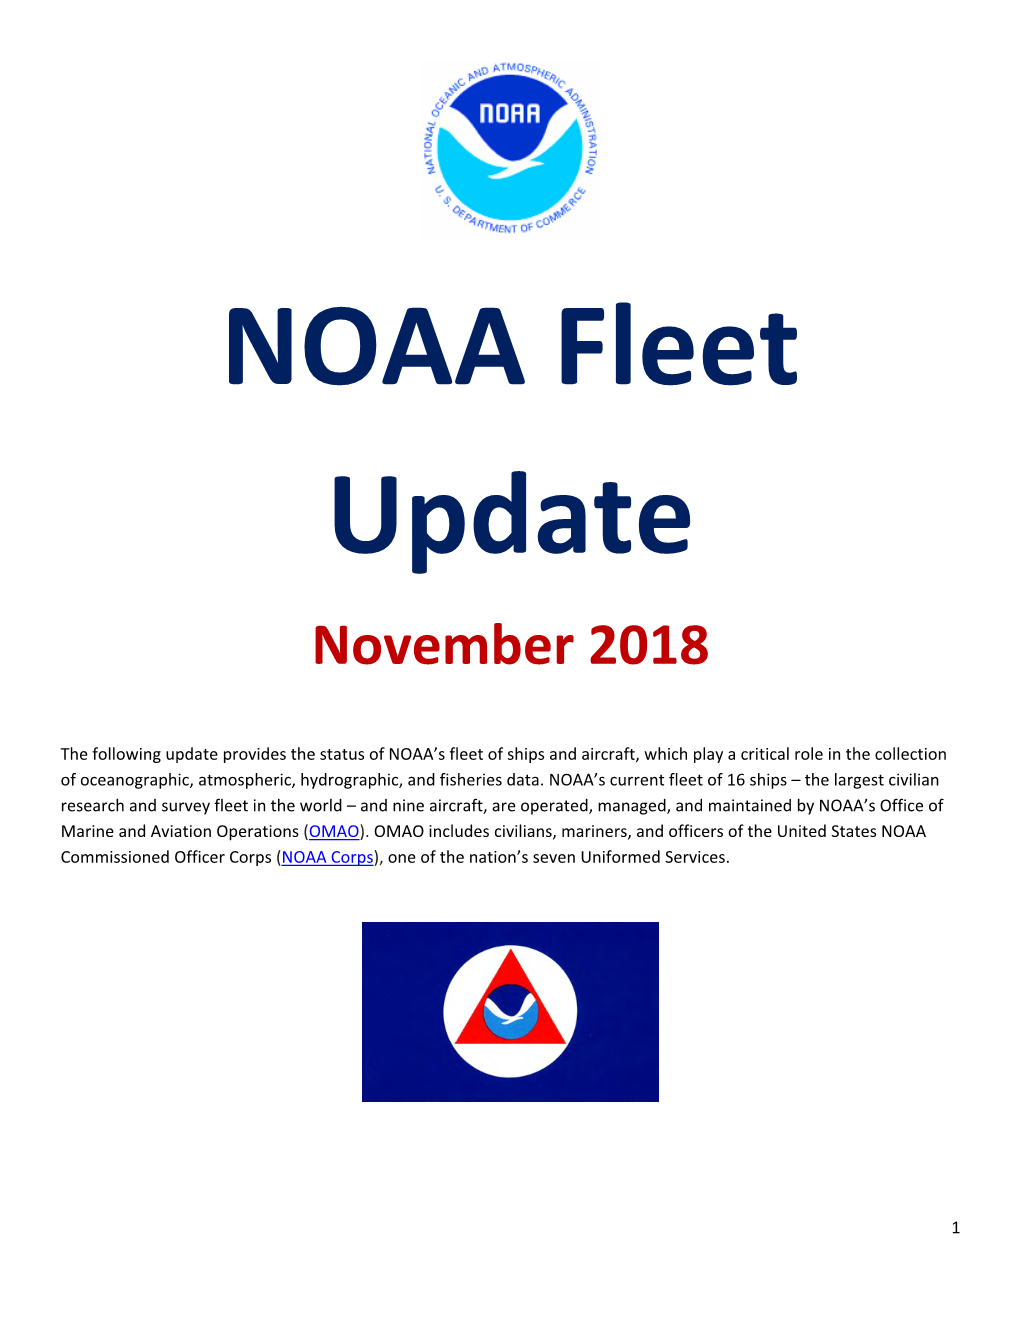 NOAA Fleet Update November 2018